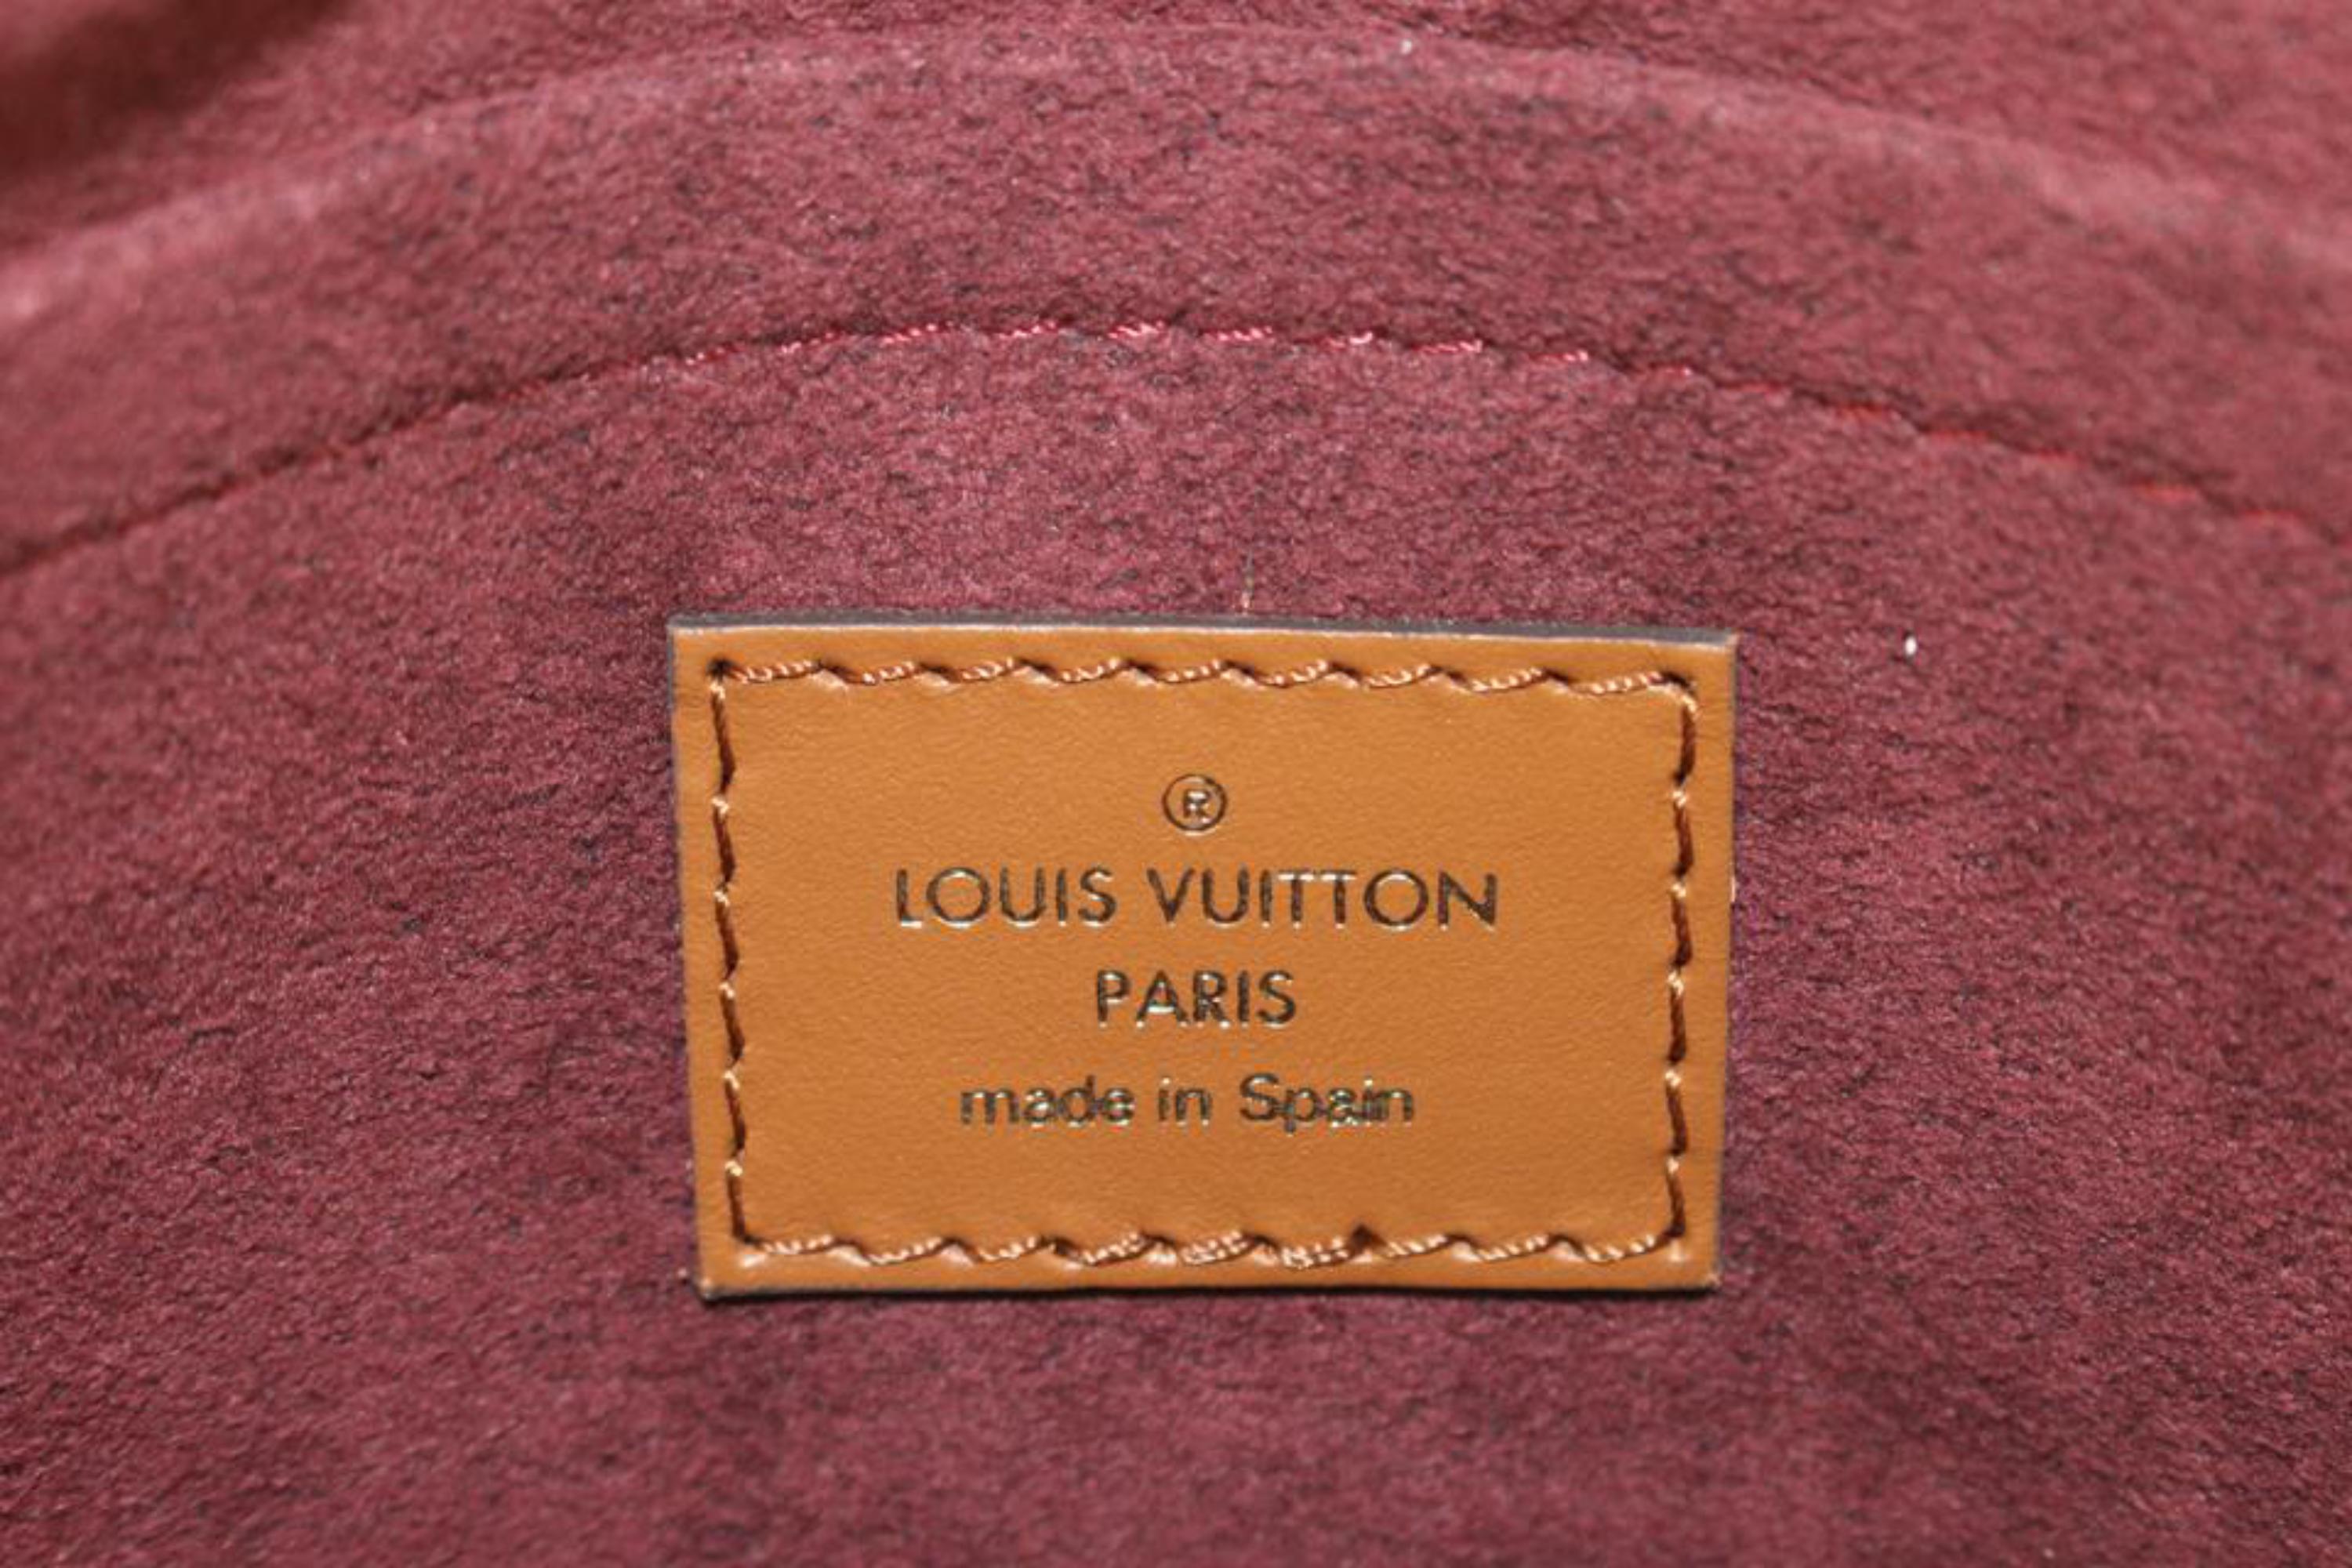 Louis Vuitton Neverfull Since 1854 MM Bordeaux in Jacquard Textile